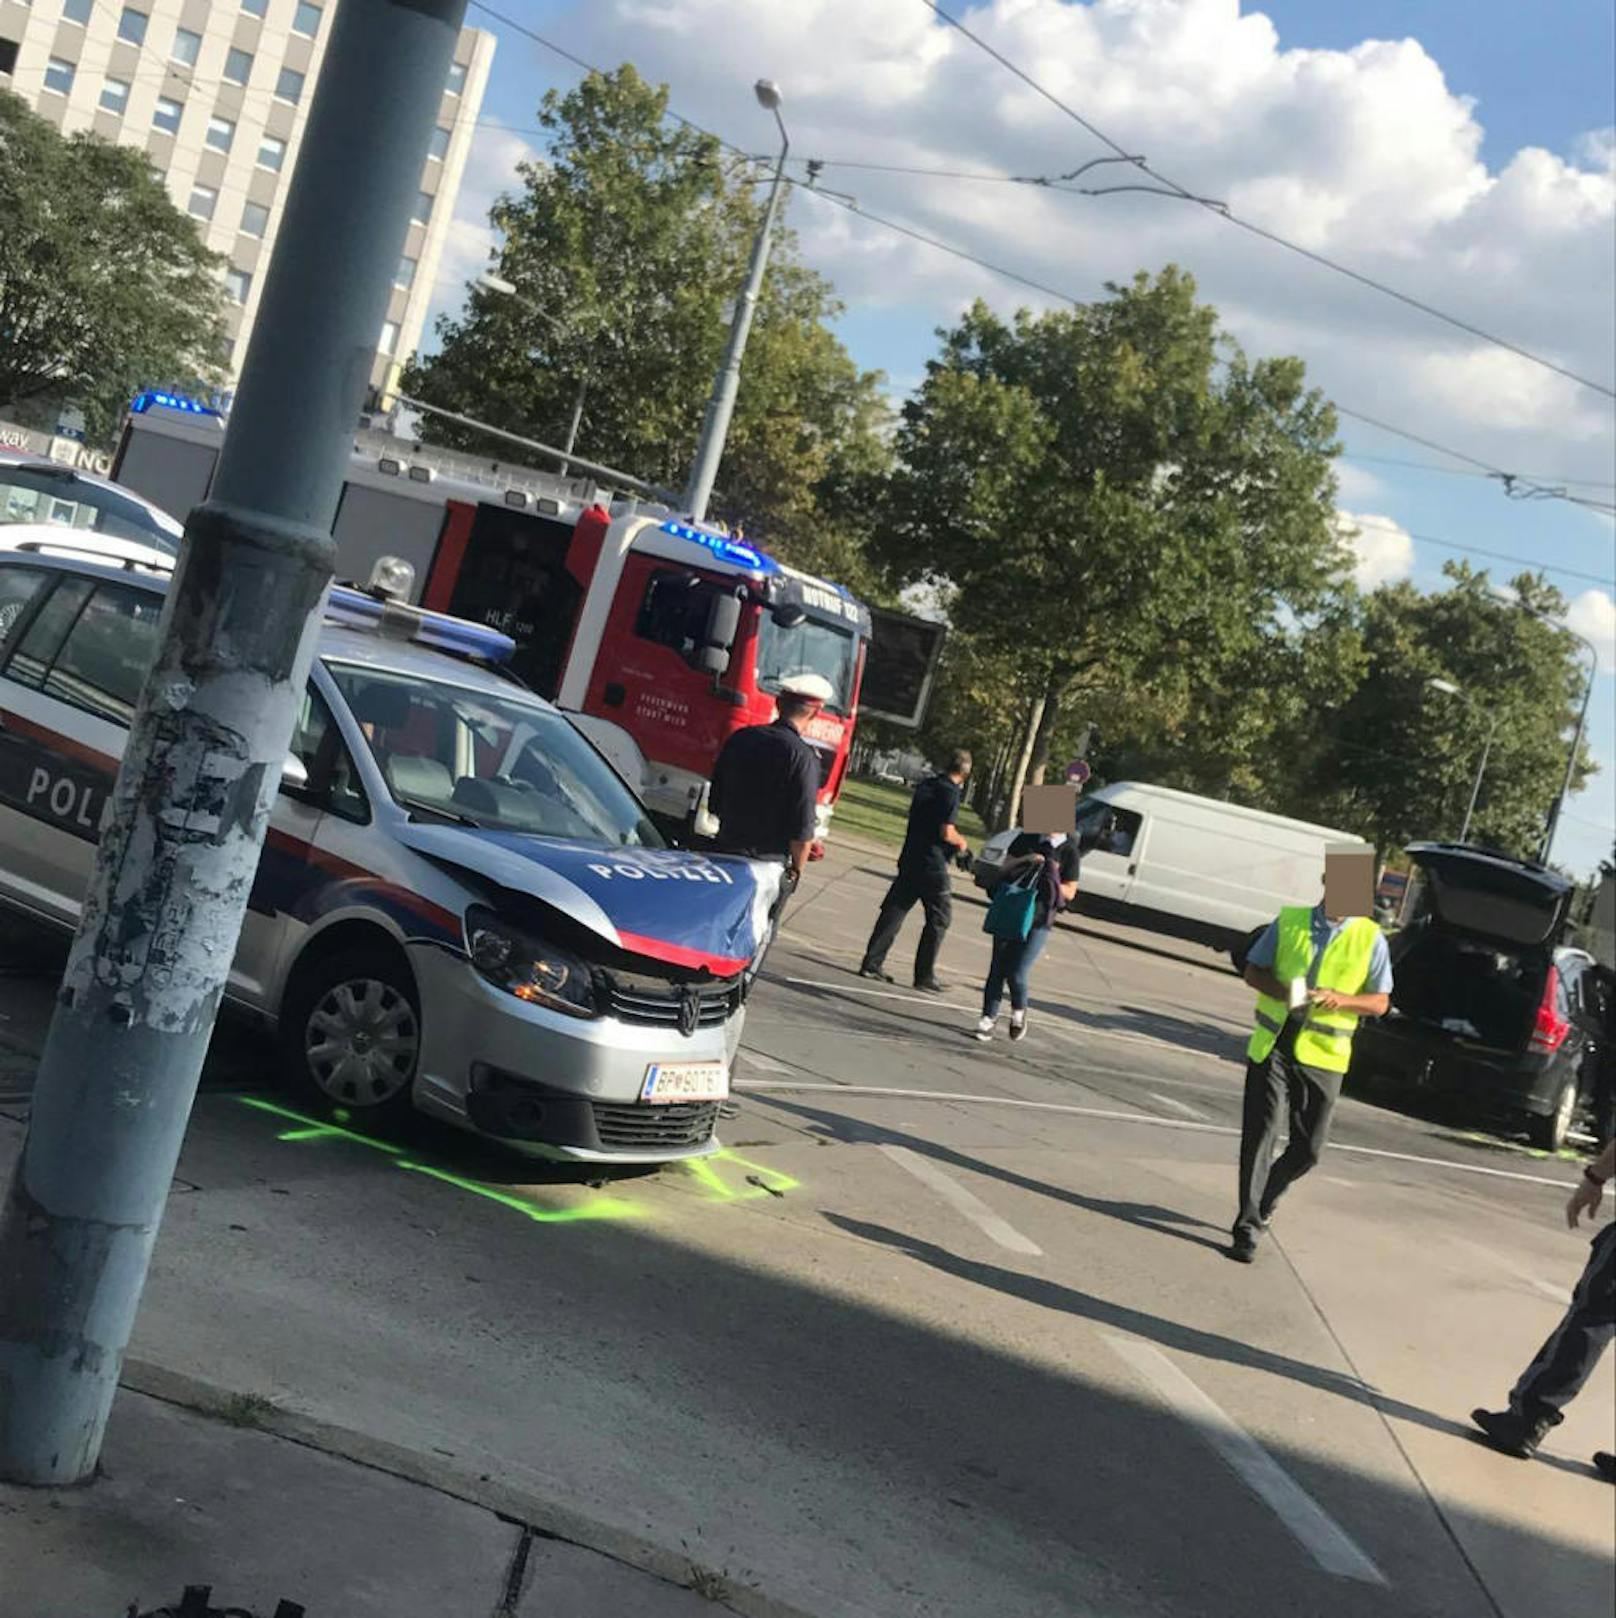 Dienstagnachmittag kam es auf der Wagramer Straße zu einem Verkehrsunfall zwischen einem Polizeiauto und einem privaten Pkw.